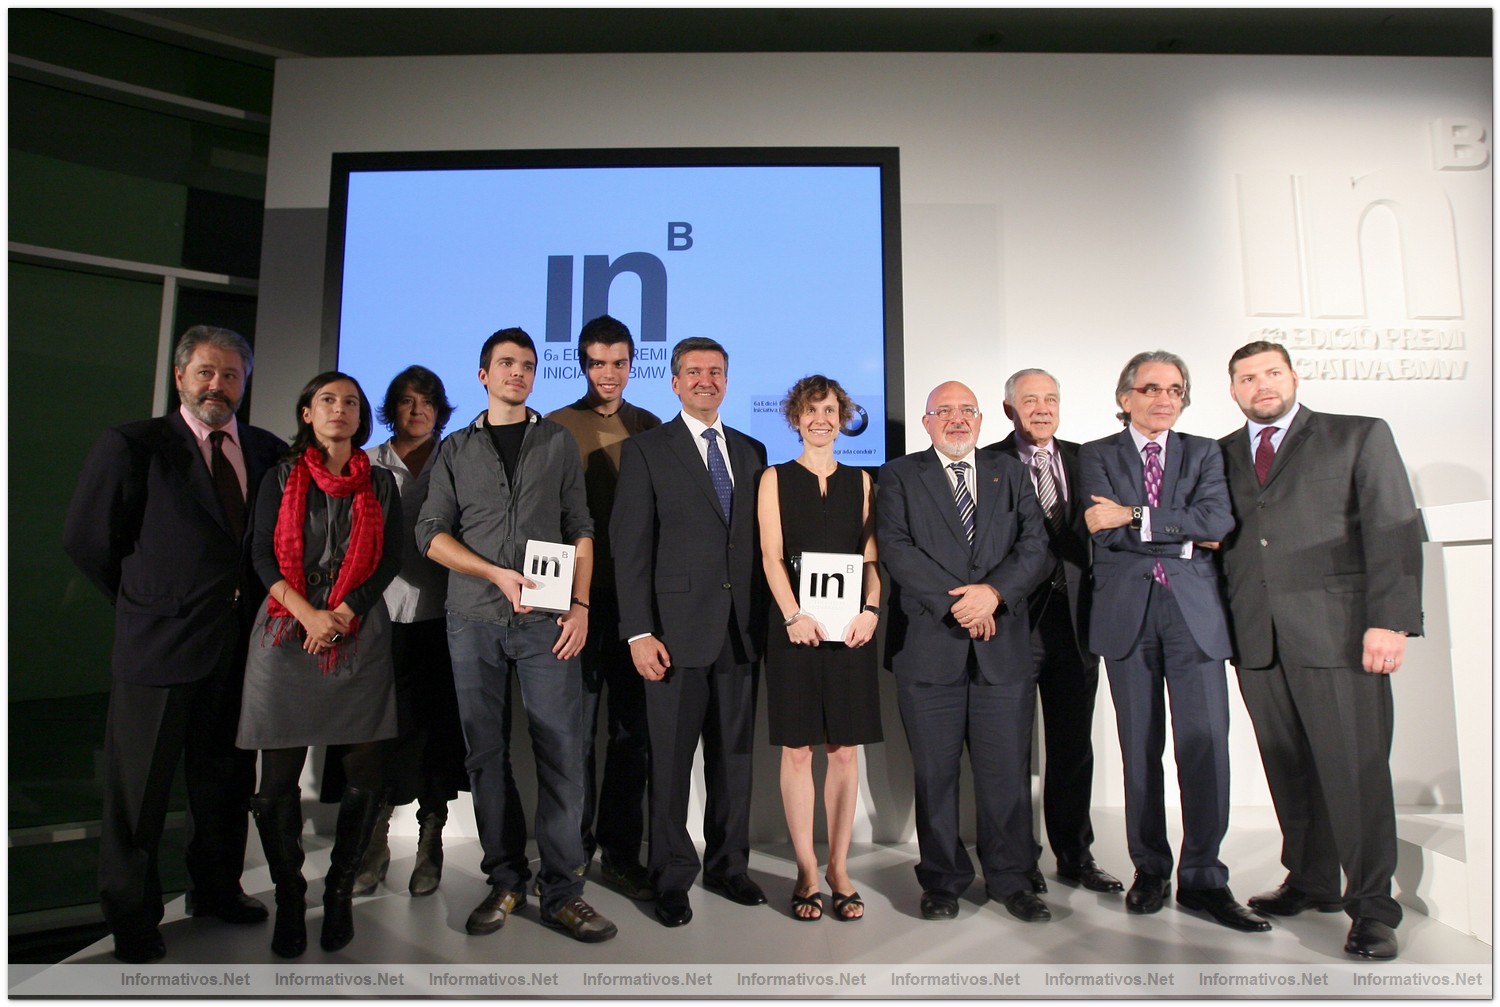 BCN26OCT010.- Premio Iniciativa BMW 2010. Foto de familia de los premiados con el jurado